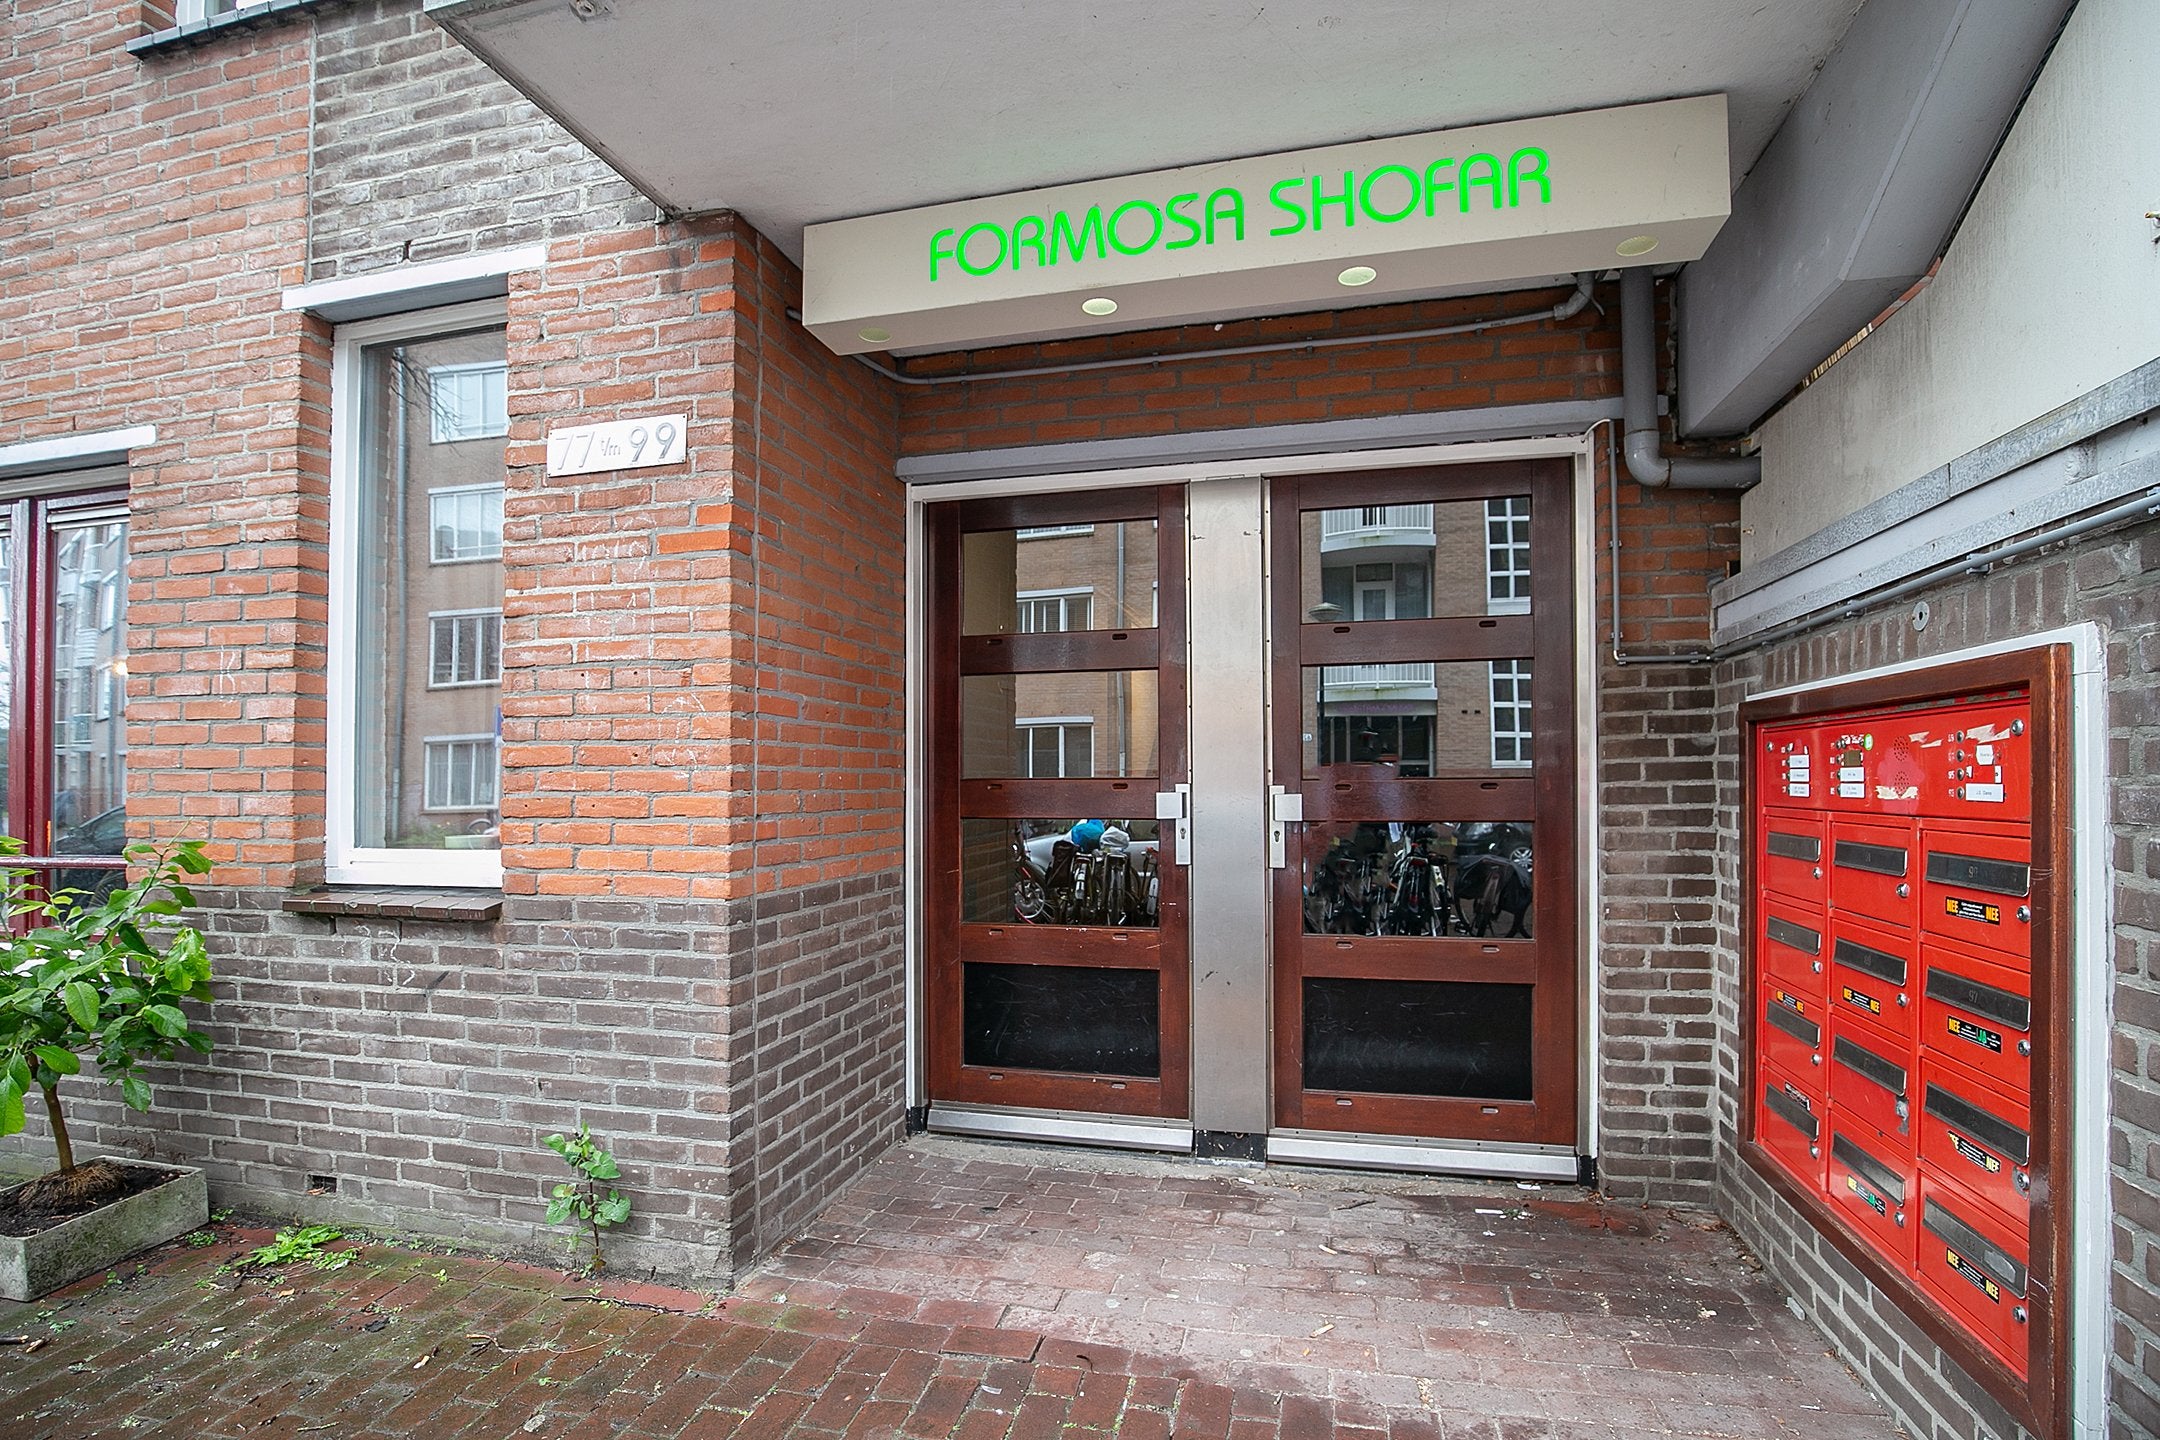 Woning in Amsterdam - Formosastraat